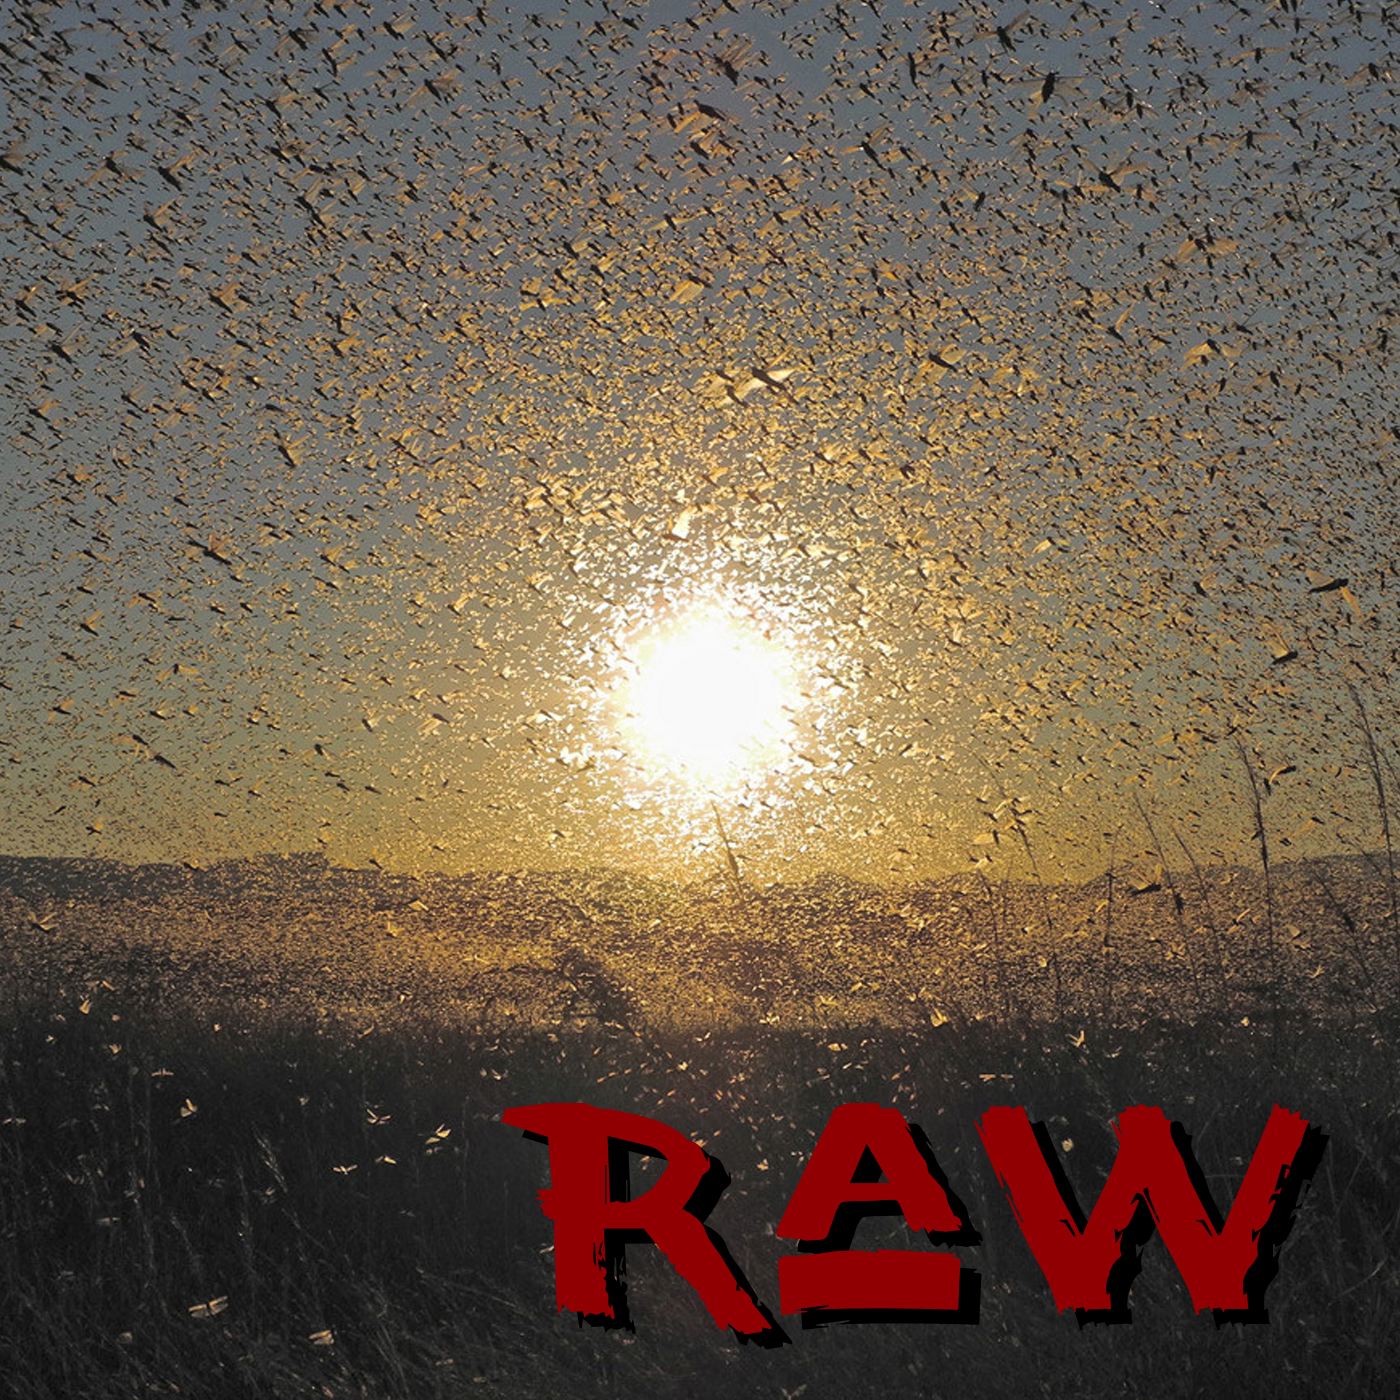 Raw 0031: The Swarms of Holy Hyperbole - Revelation Unleashed